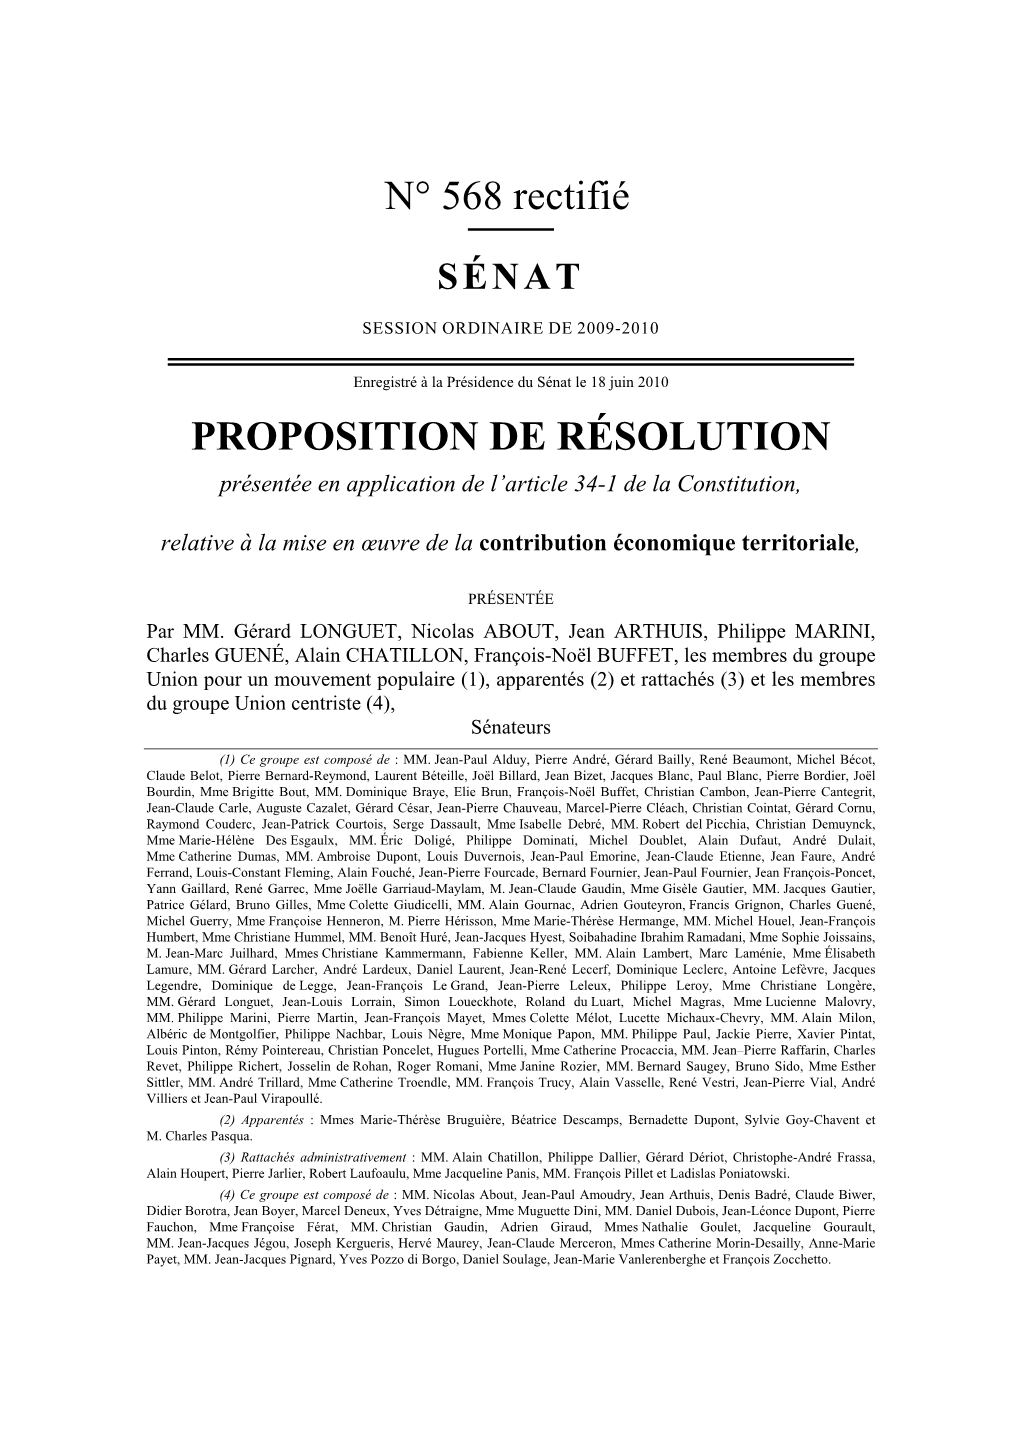 N° 568 Rectifié PROPOSITION DE RÉSOLUTION